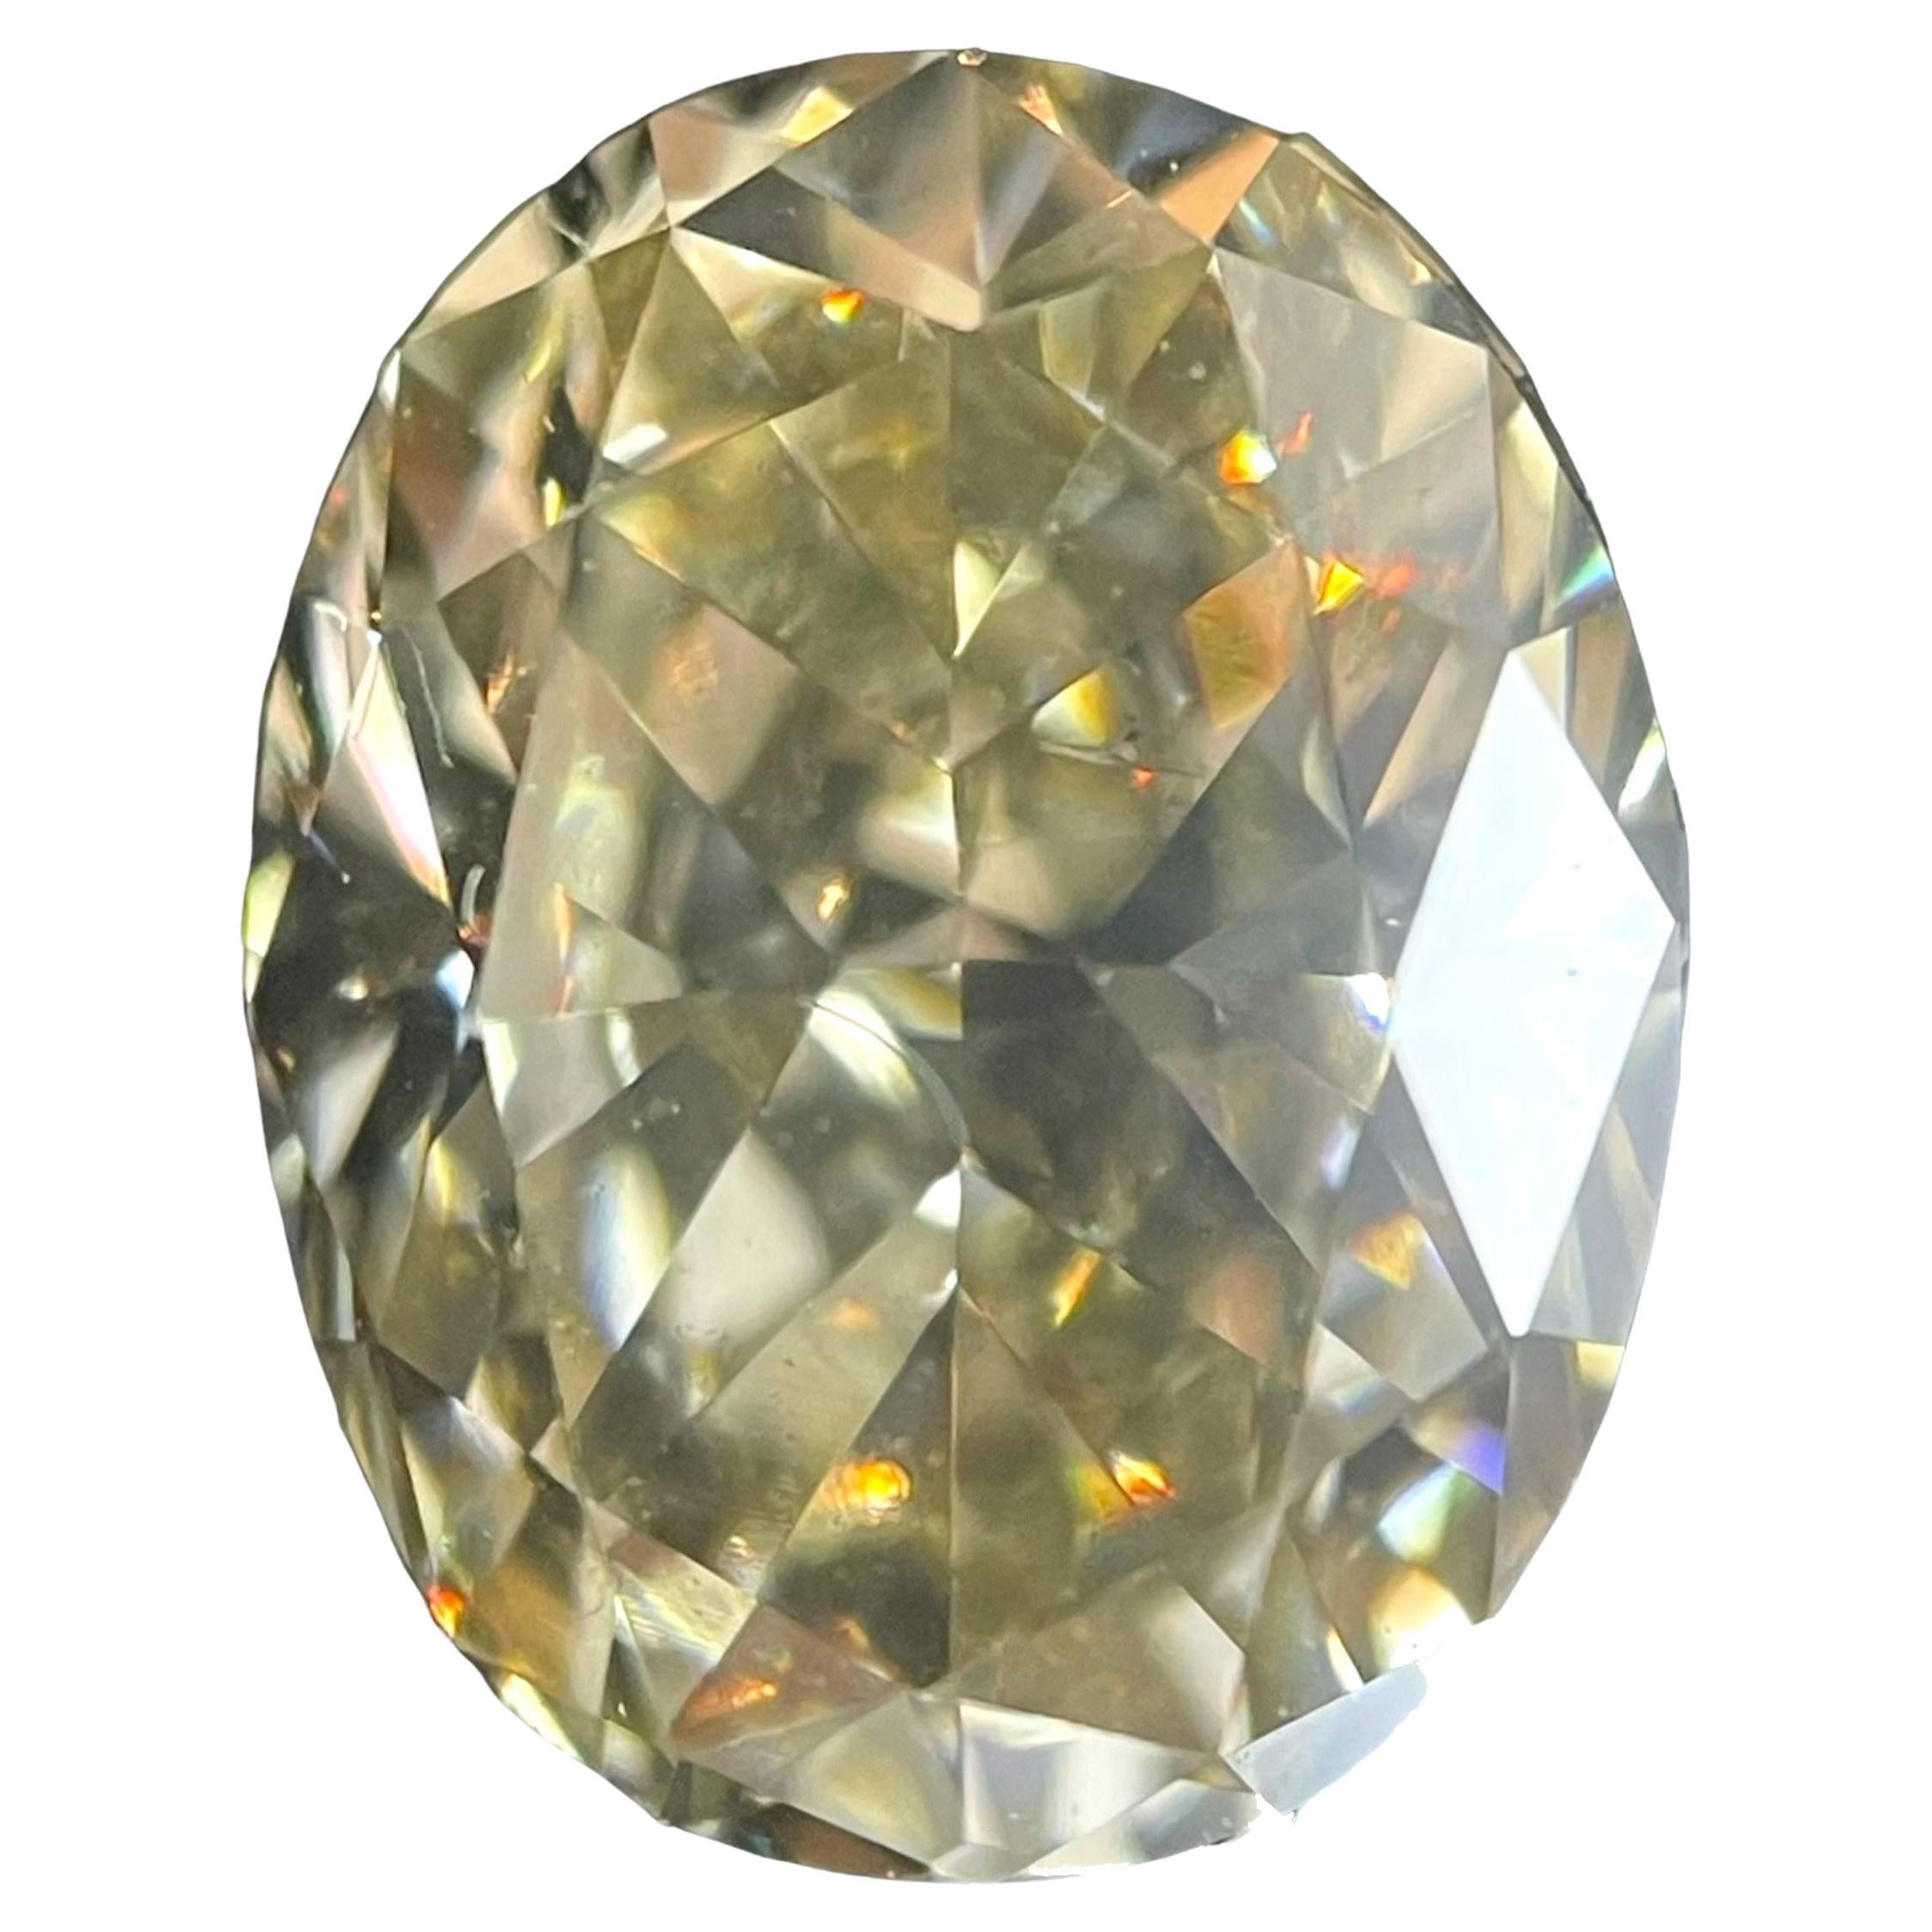 Diamant naturel jaune brunâtre fantaisie taille ovale de 1,52 carat certifié par Gia SI1